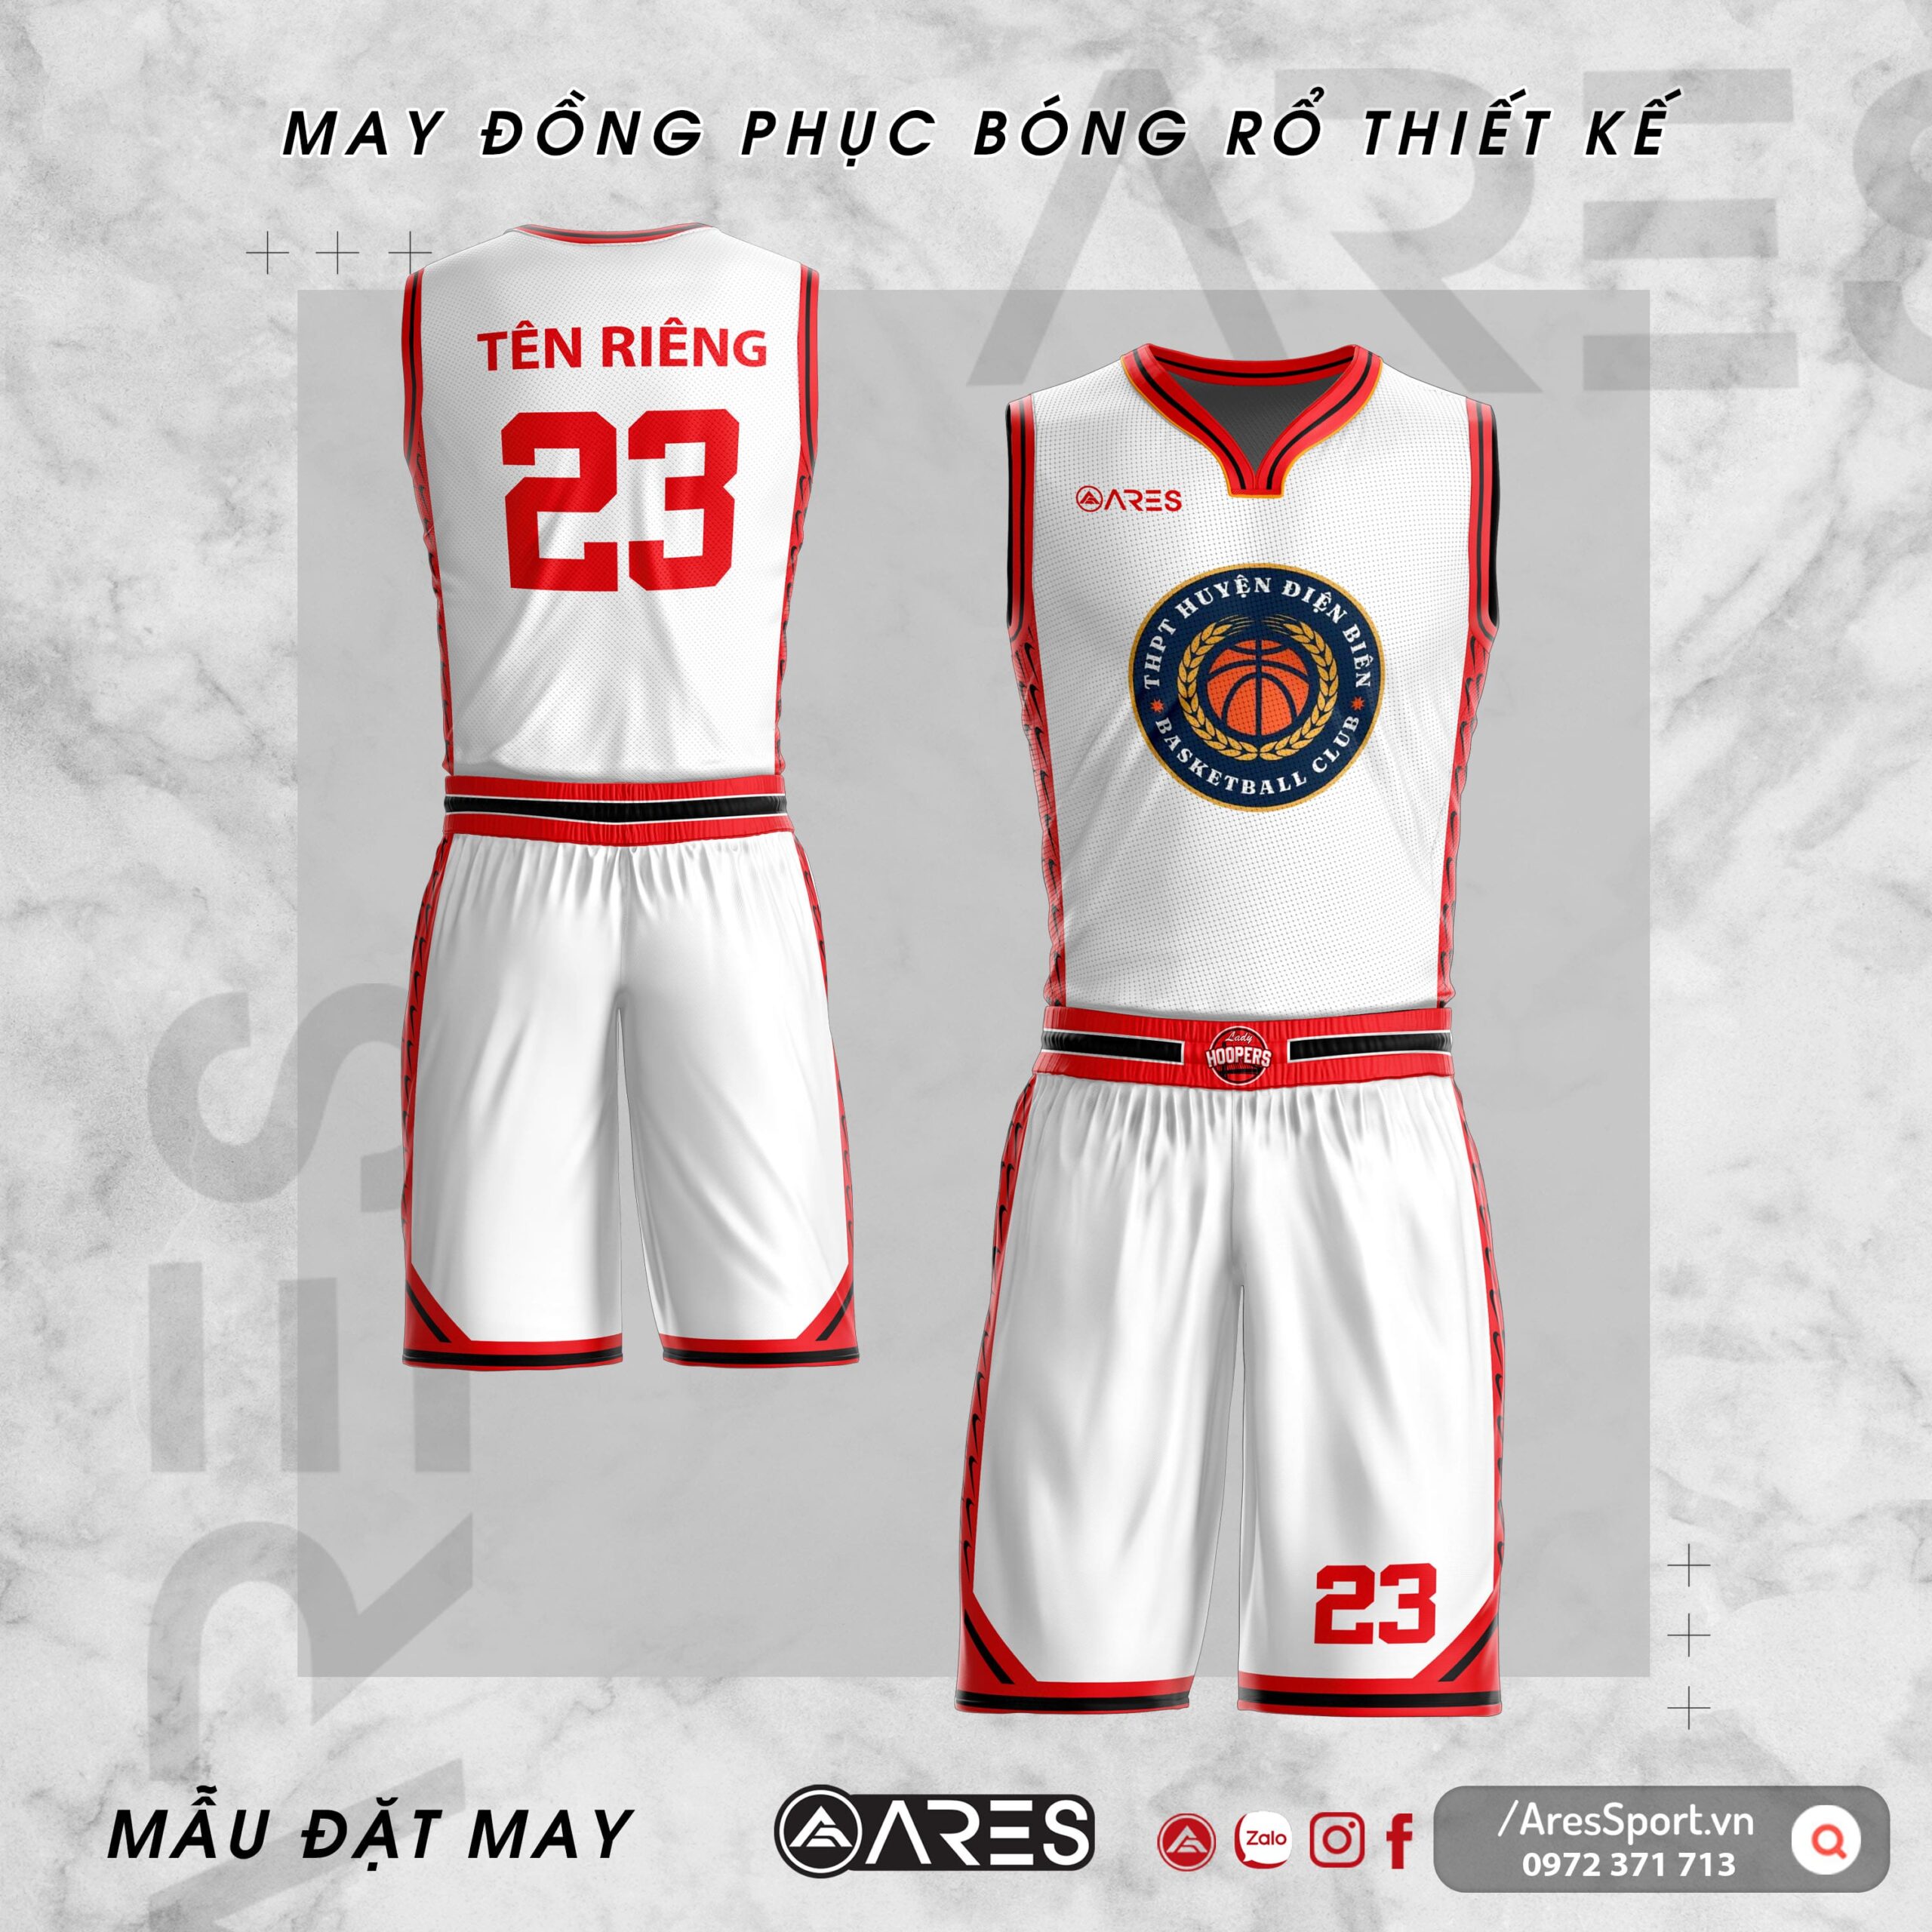 Đồng phục bóng rổ thiết kế huyện Điện Biên đỏ trắng thanh lịch